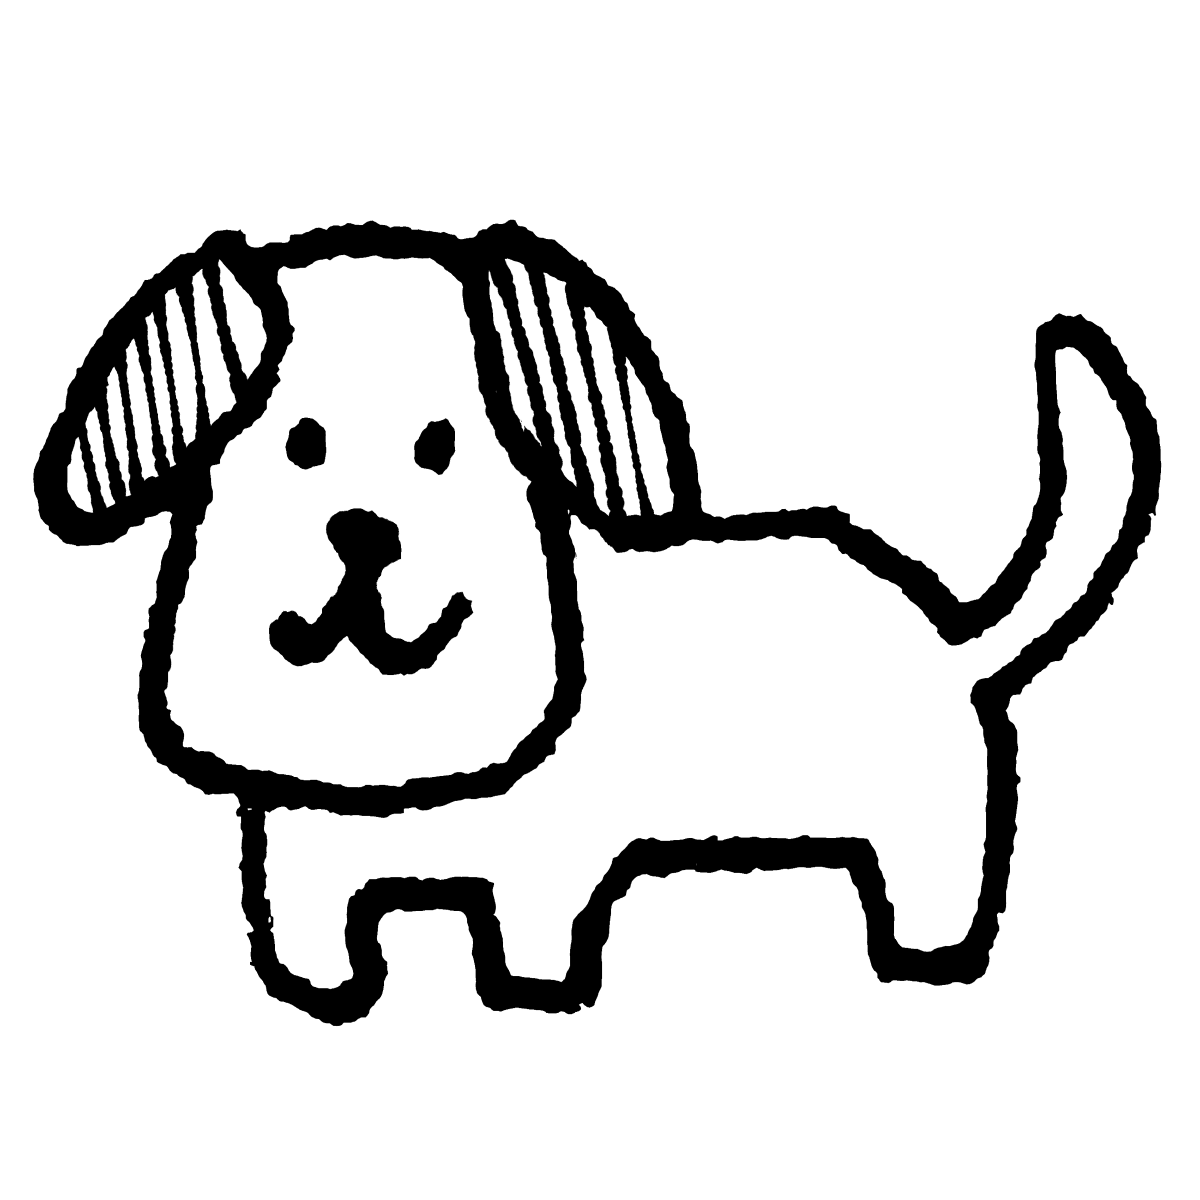 てがきですの 無料イラスト素材屋さん Pa Twitter 本日のおすすめイラストです 立つ犬1 T Co Ir4tgdyinp イラスト 素材 ゆるい かわいい てがきですの